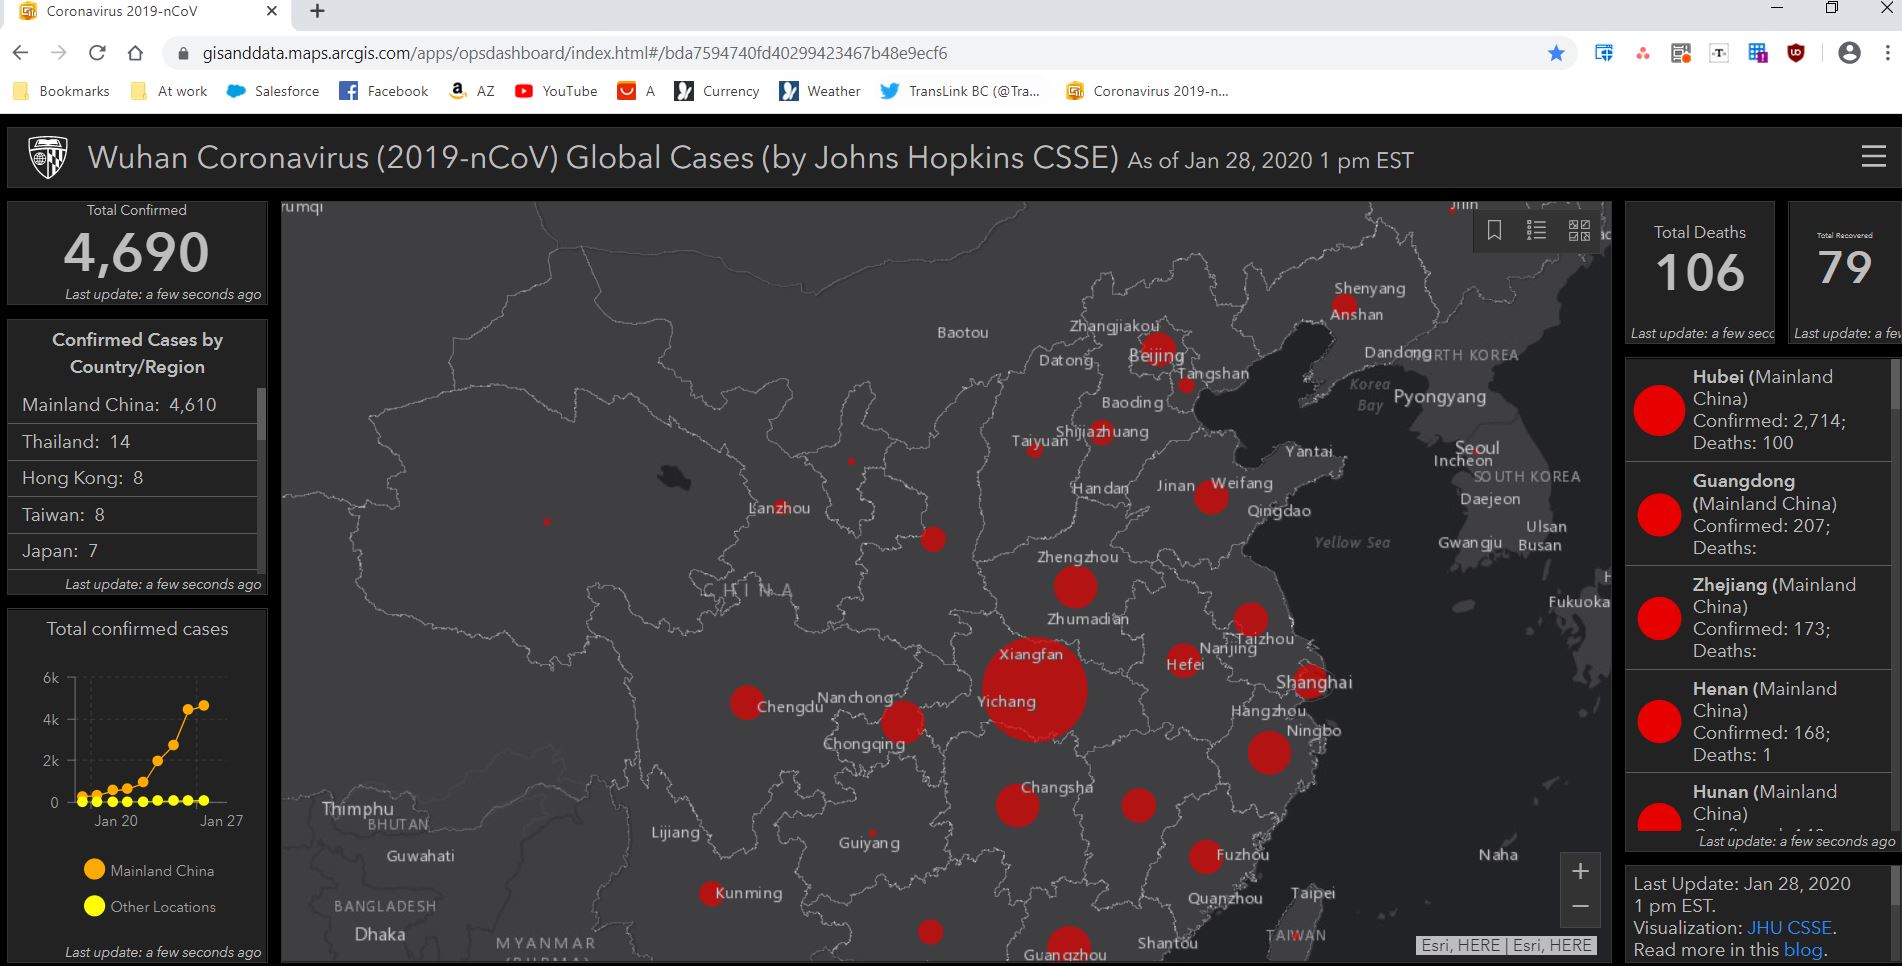 Website theo dõi coronavirus (Wuhuan coronavirus (2019-nCov)